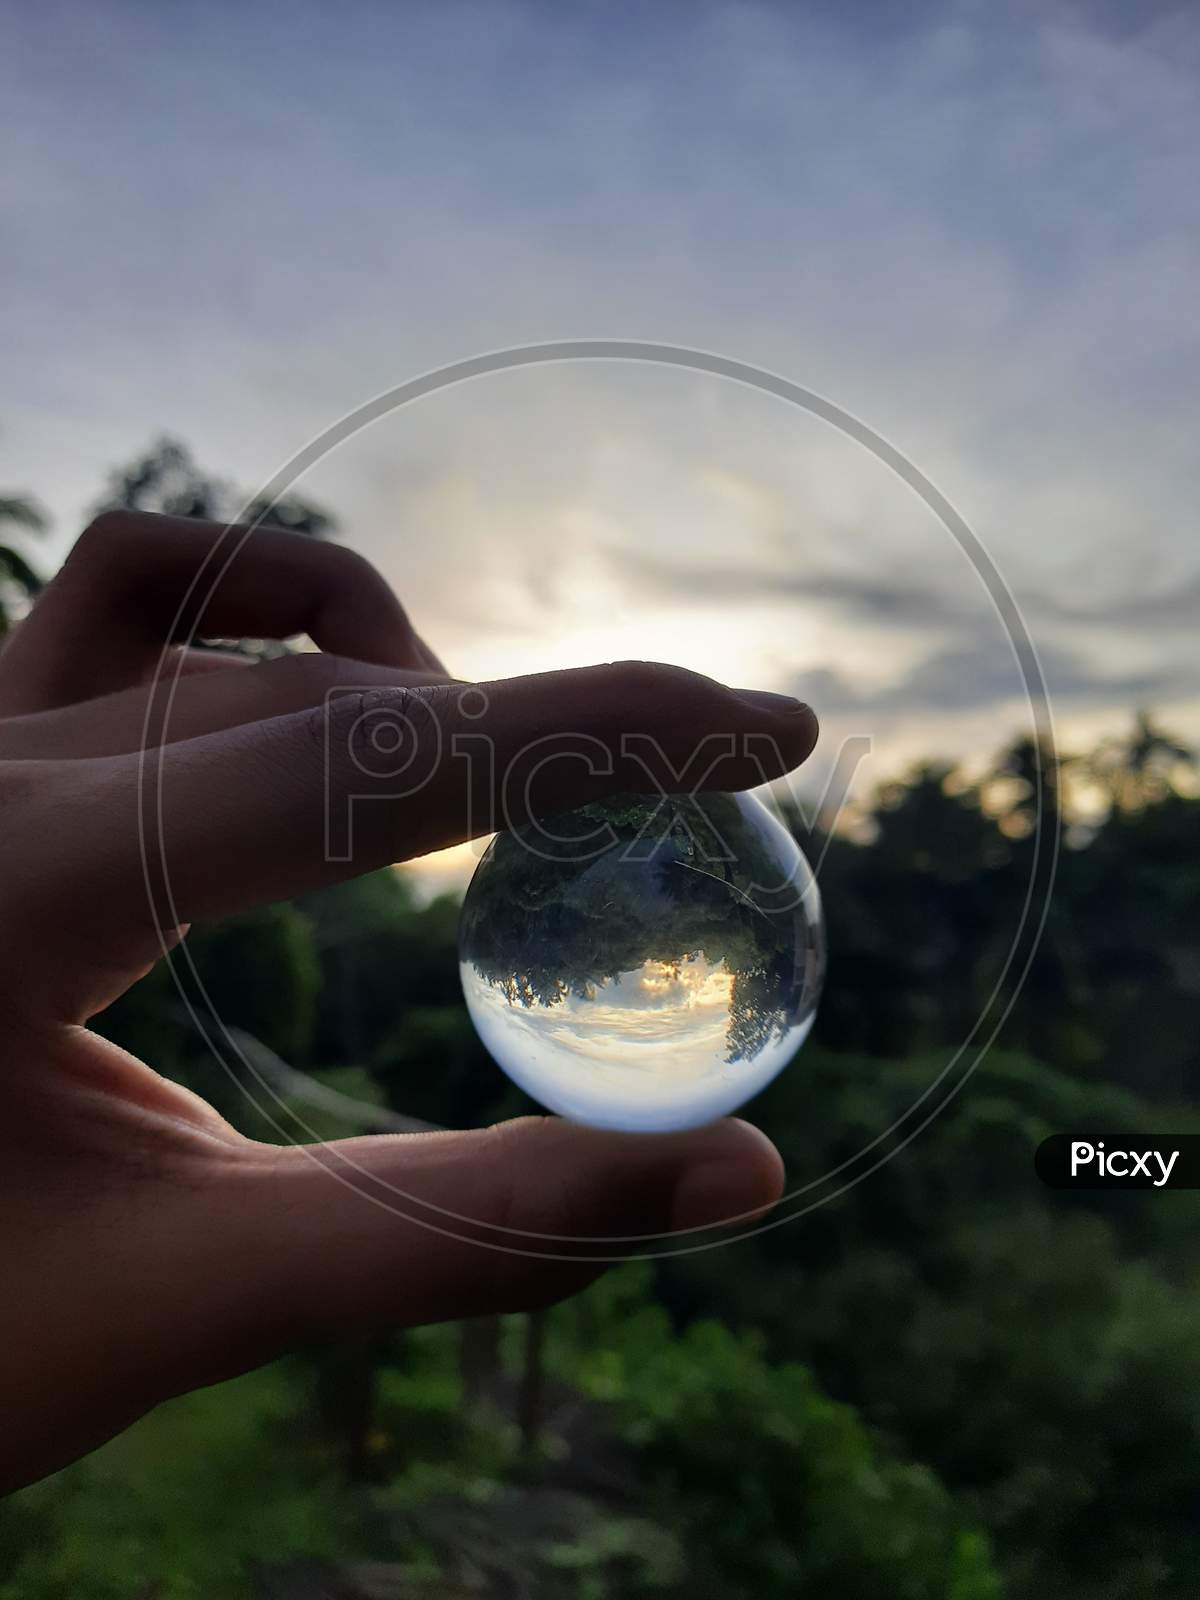 The lens ball